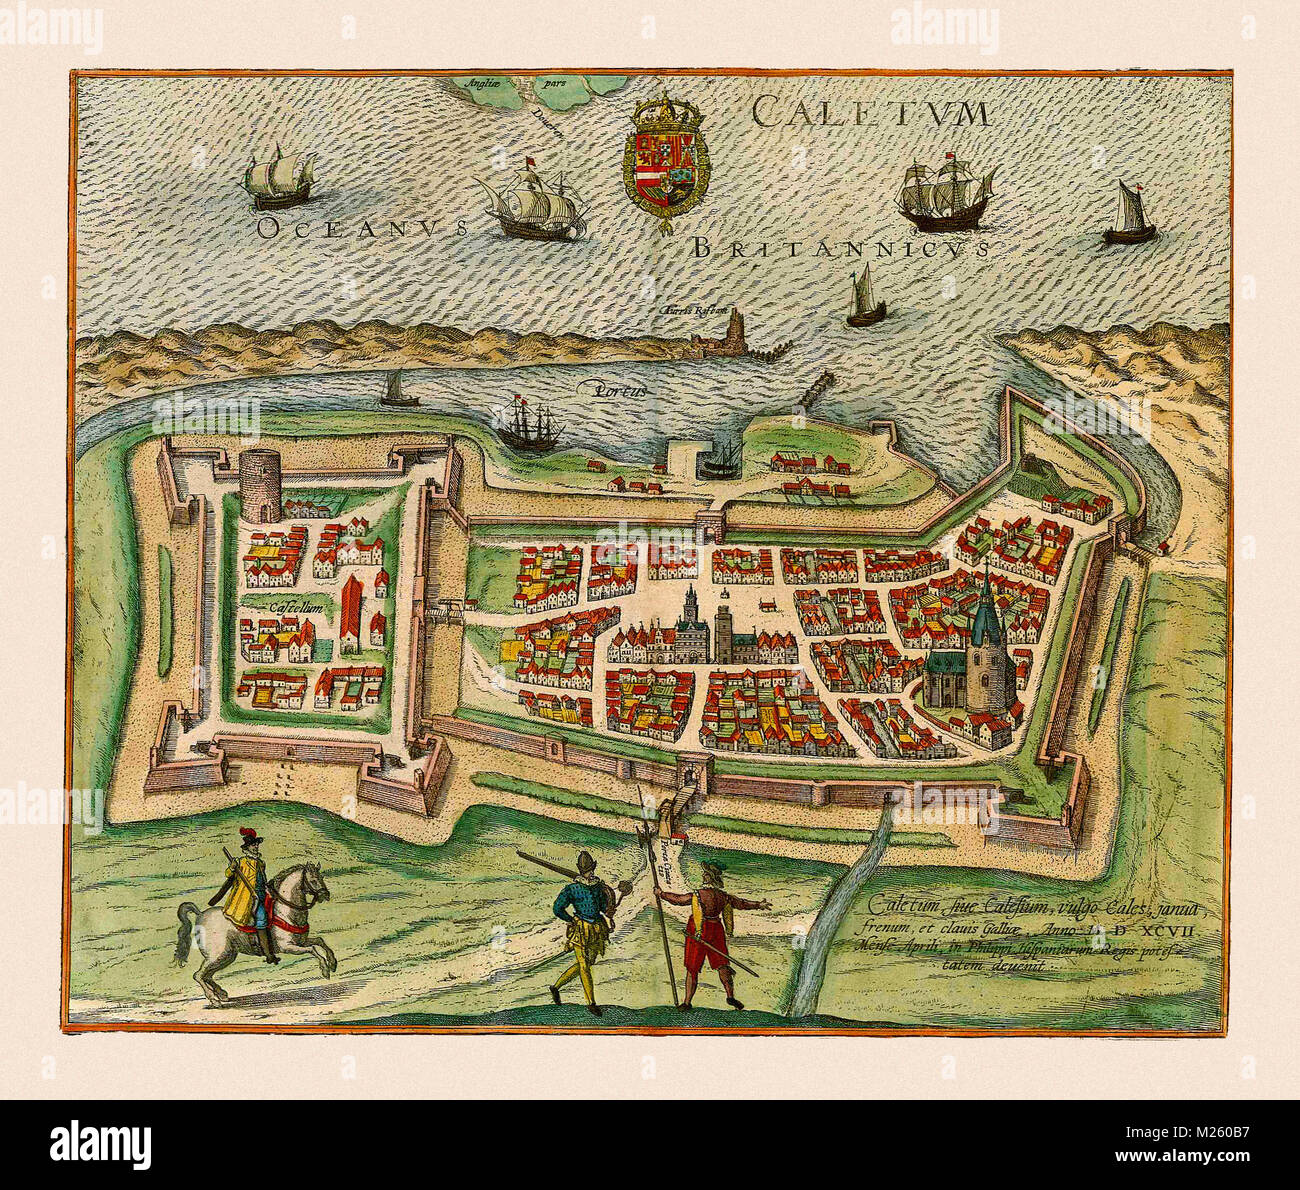 Historical map of Calais, France circa 1649. Stock Photo